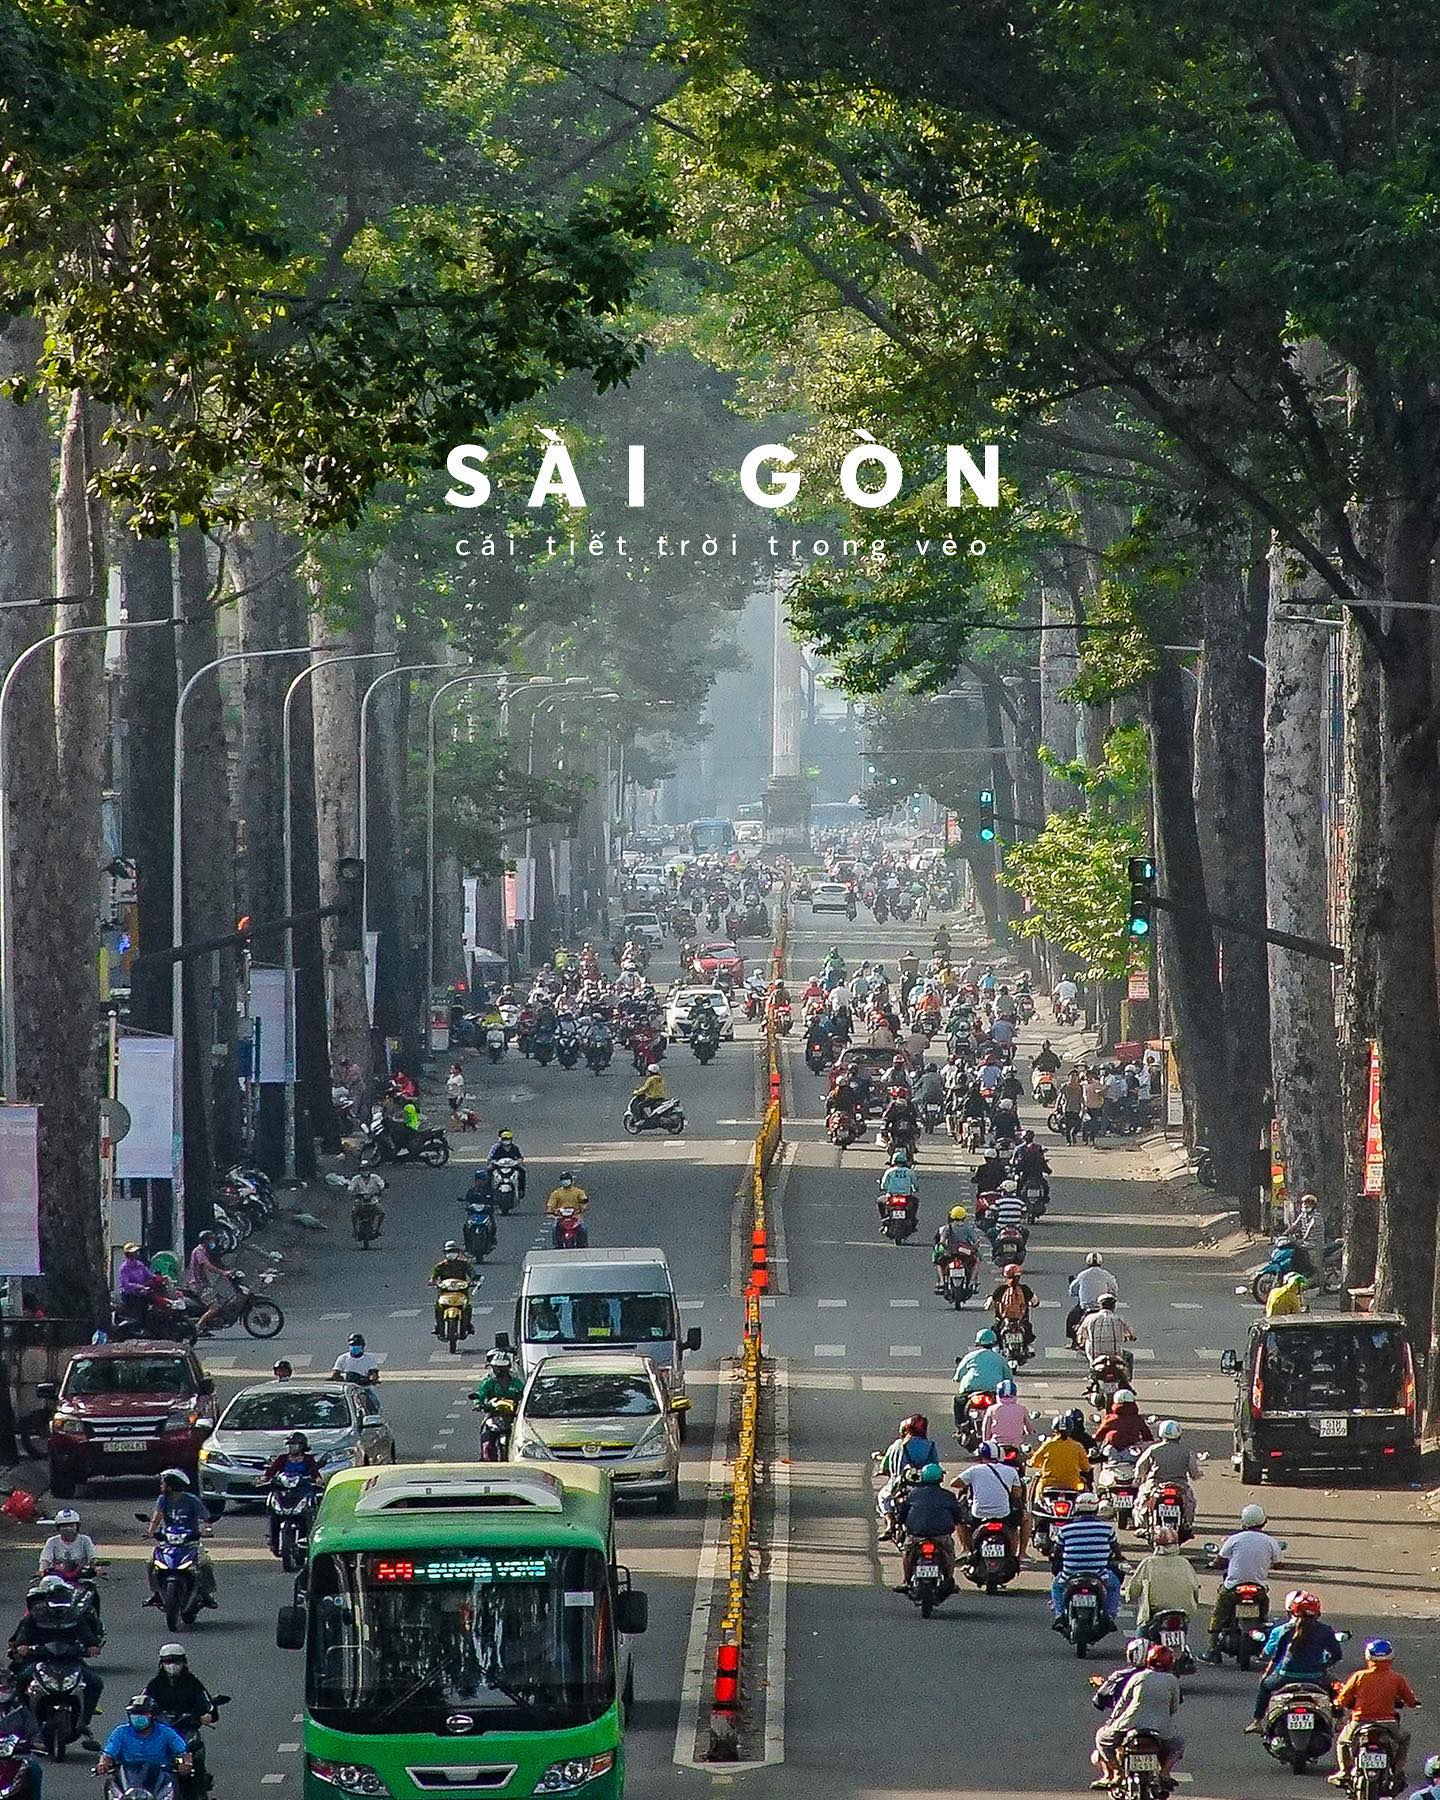 Những hình ảnh về Sài Gòn ngày thường sẽ khiến bạn cảm thấy như đang sống trong thành phố nhộn nhịp này qua mỗi khoảnh khắc tuyệt vời. Từ tấp nập trên đường phố, đến không gian yên tĩnh trong các ngôi đền ven sông, Sài Gòn luôn là nơi mang lại nhiều cảm xúc và trải nghiệm thú vị. Chỉ cần cầm chiếc smartphone, bạn có thể làm nên những bức ảnh đẹp nhất về Sài Gòn ngày thường.